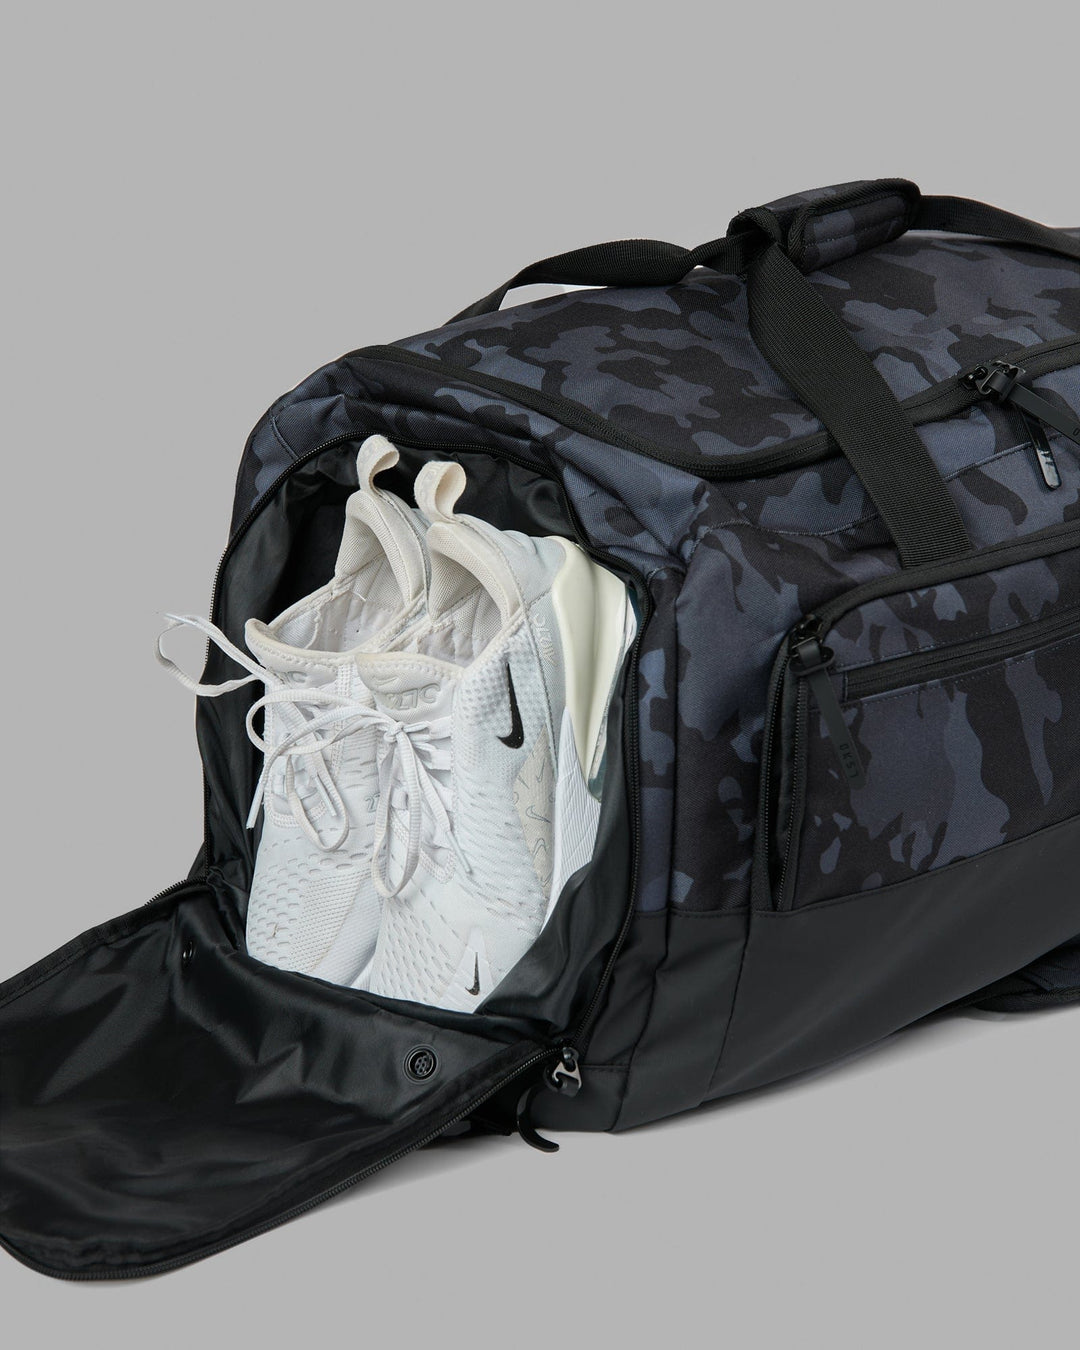 Rep Duffle Bag 70L - Camo